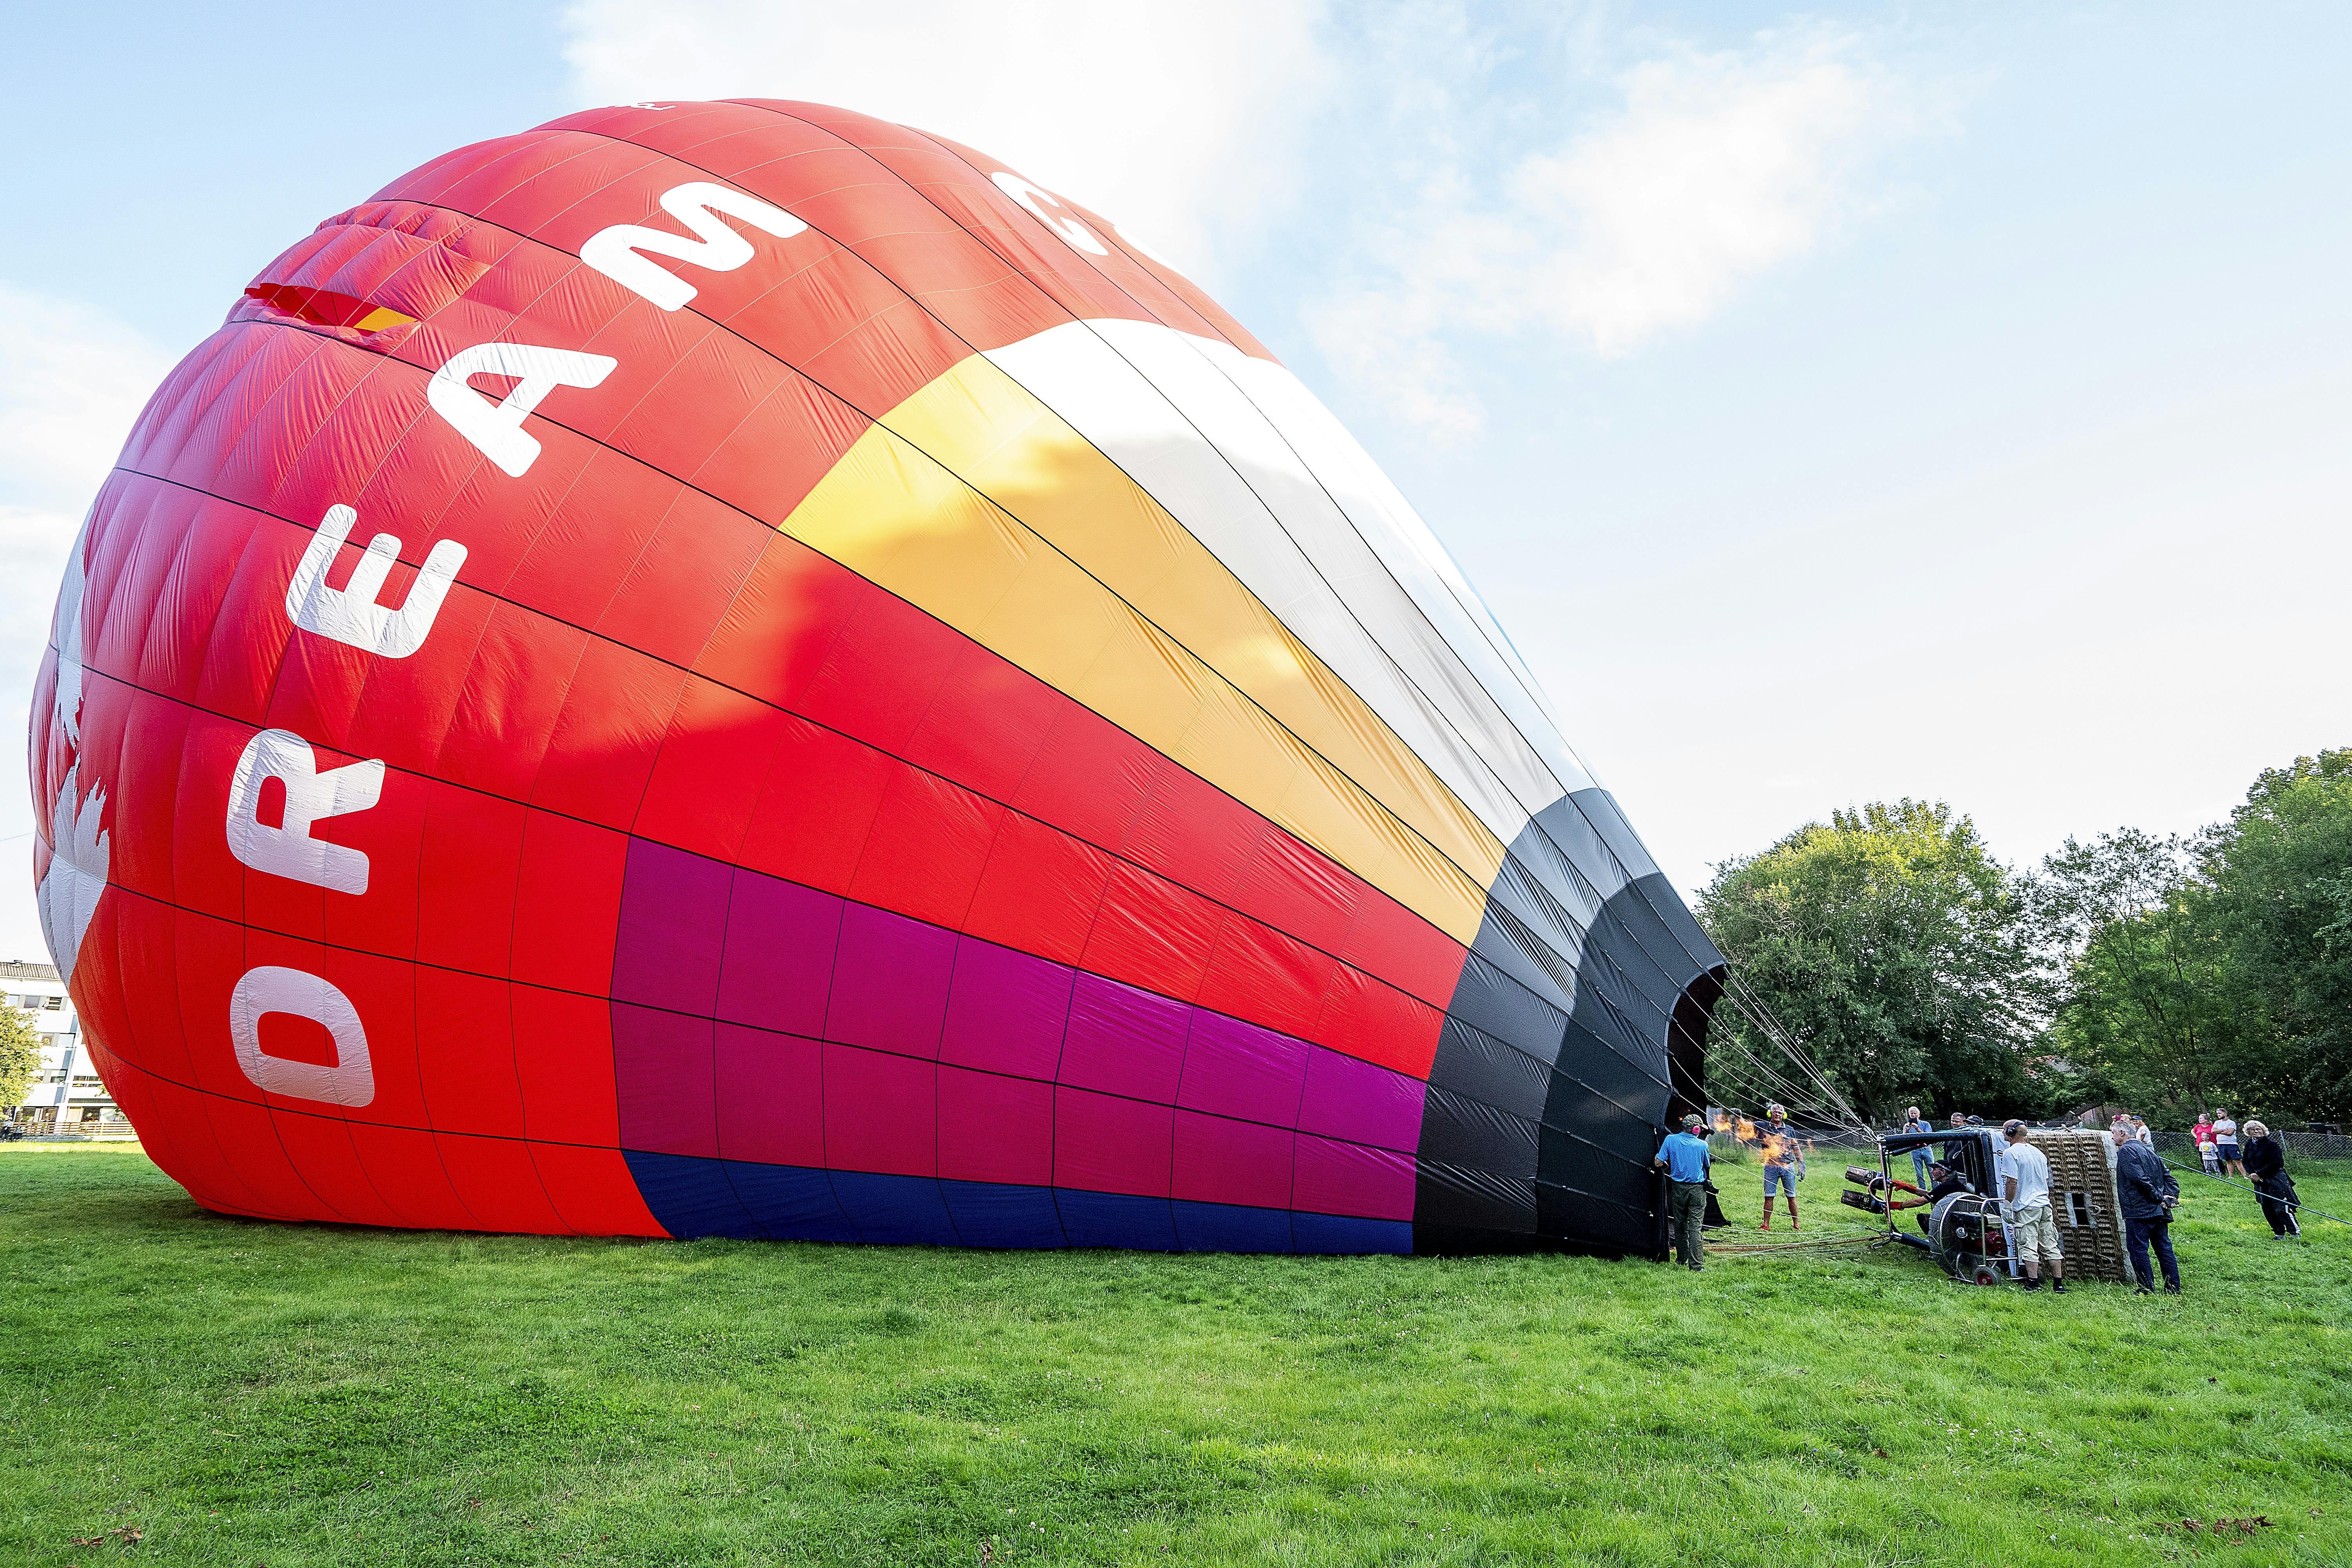 Så er luftballonen fra DreamBalloon næsten pustet op, og flyveturen fra græsarealet i Sorø kan begynde.